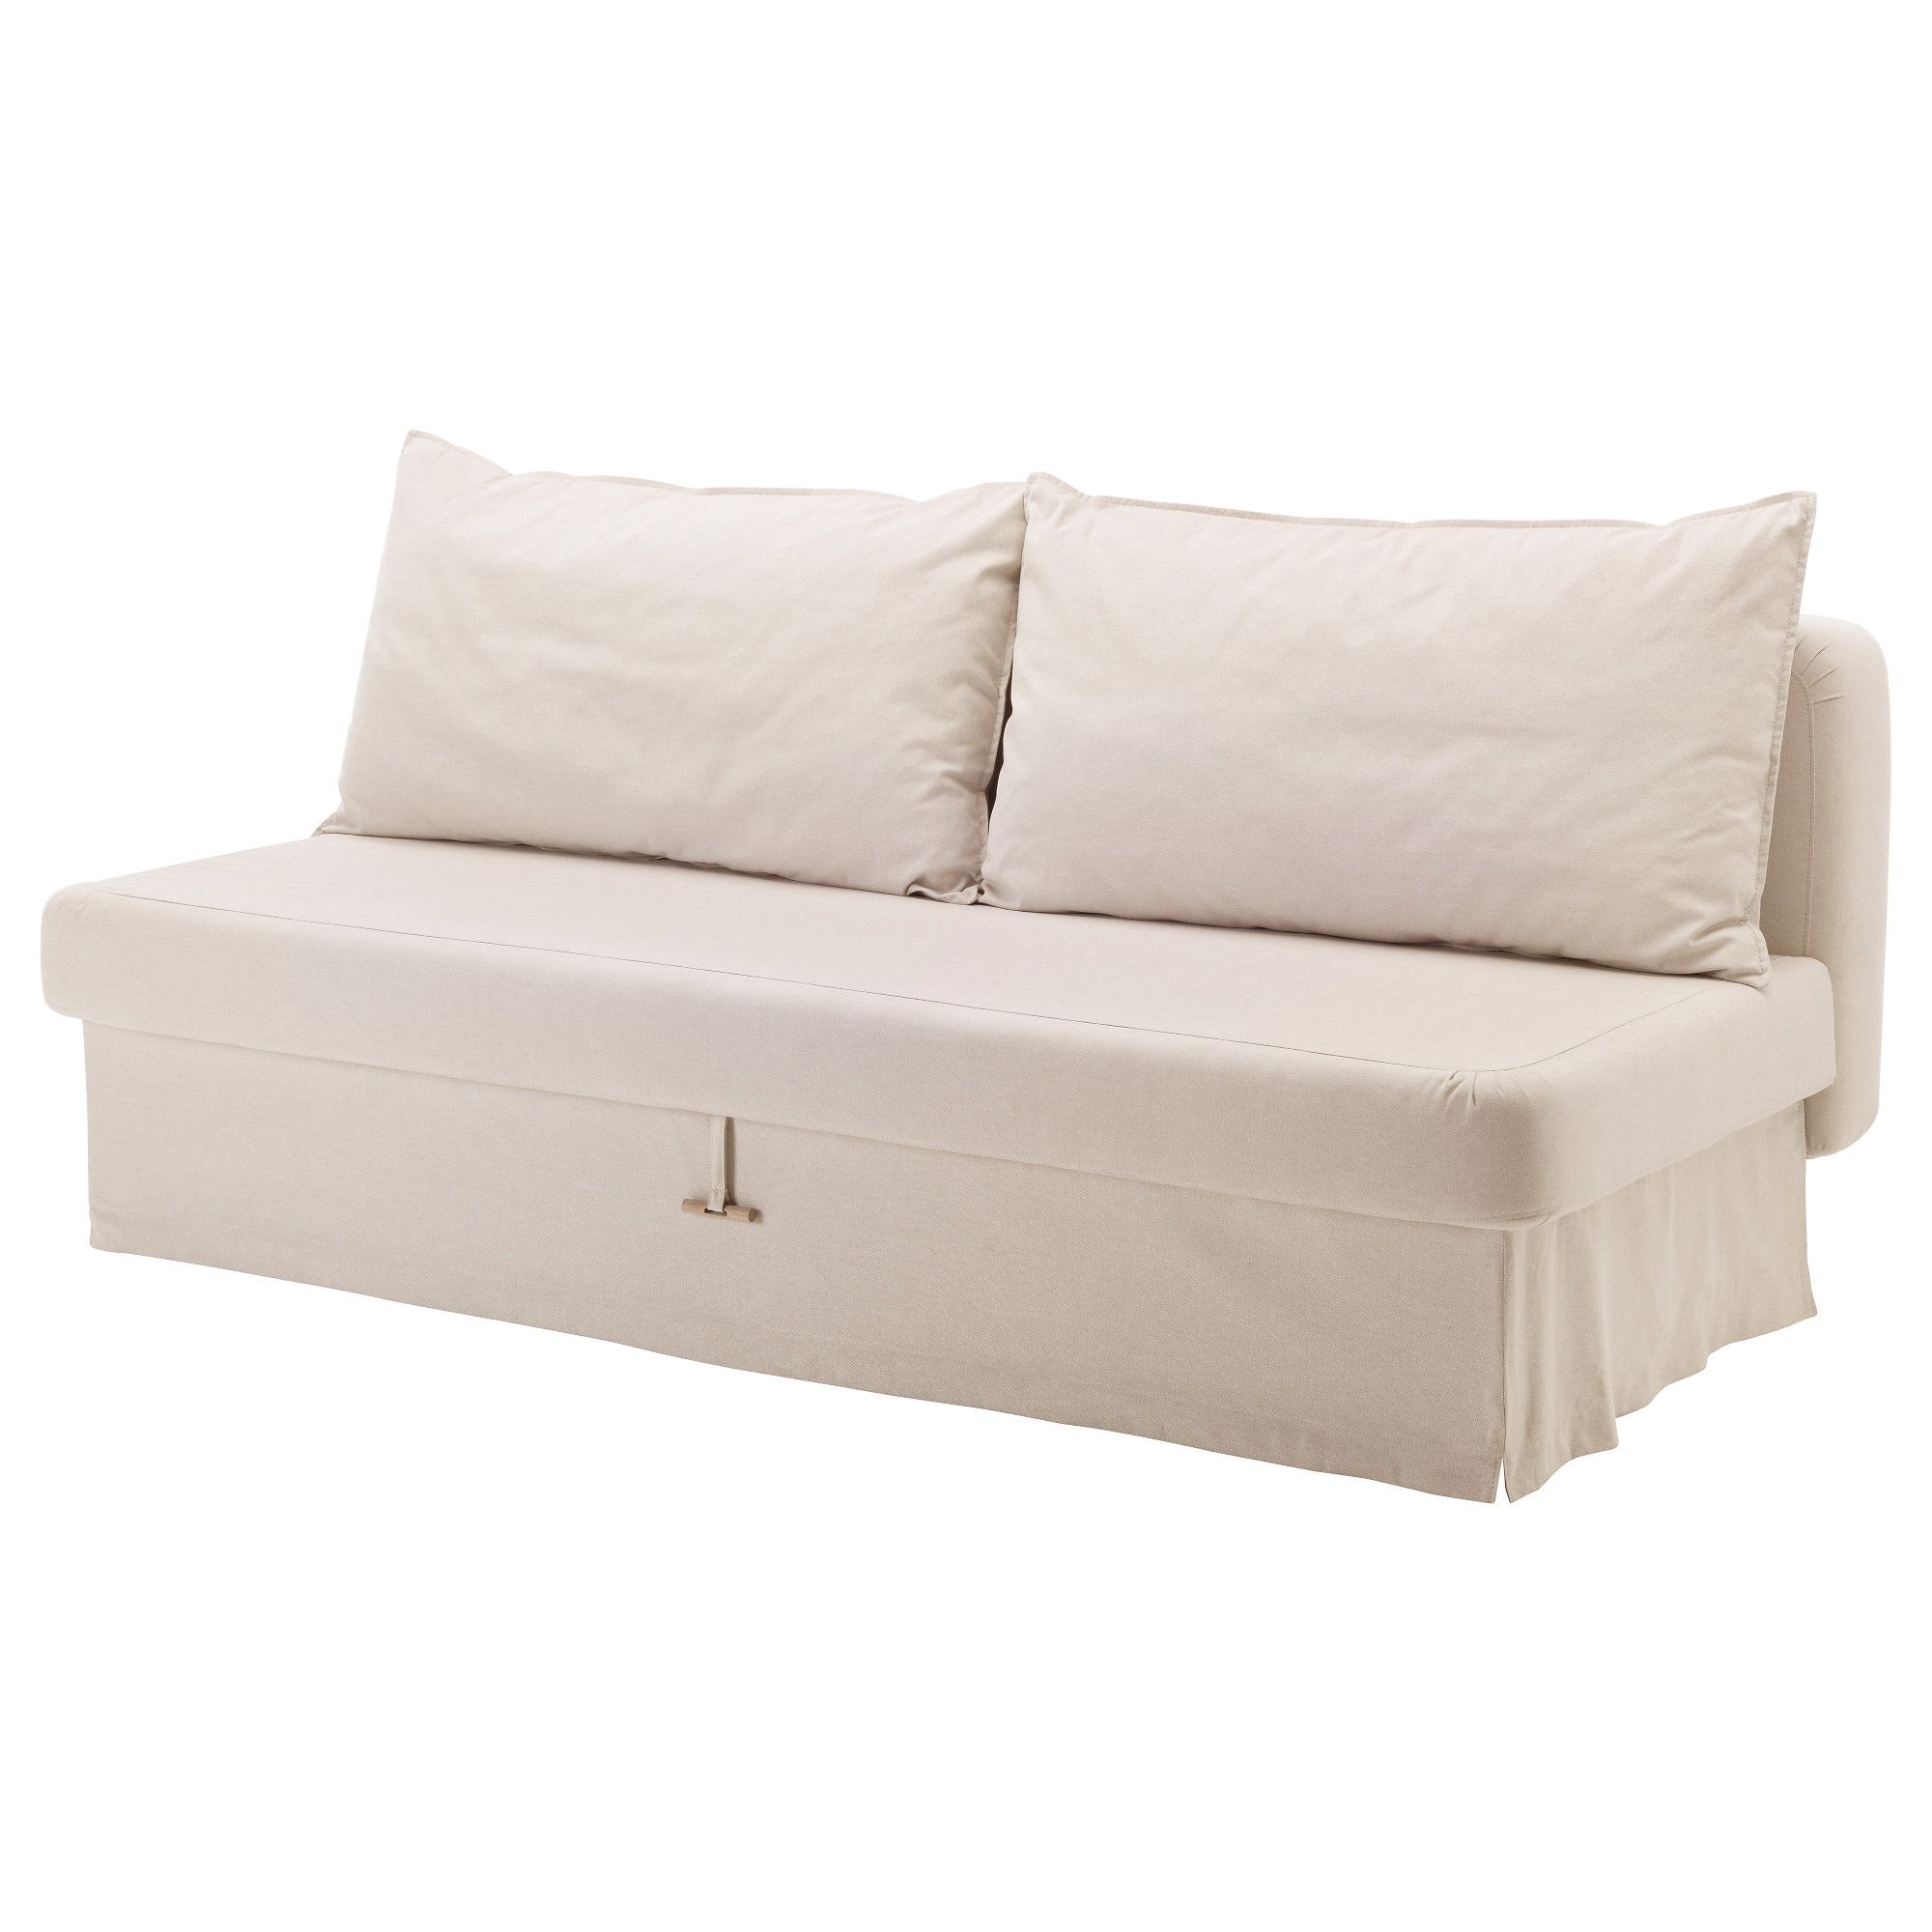 Hướng dẫn chi tiết cách sử dụng Sofa Bed at Ikea - EDORA.VN